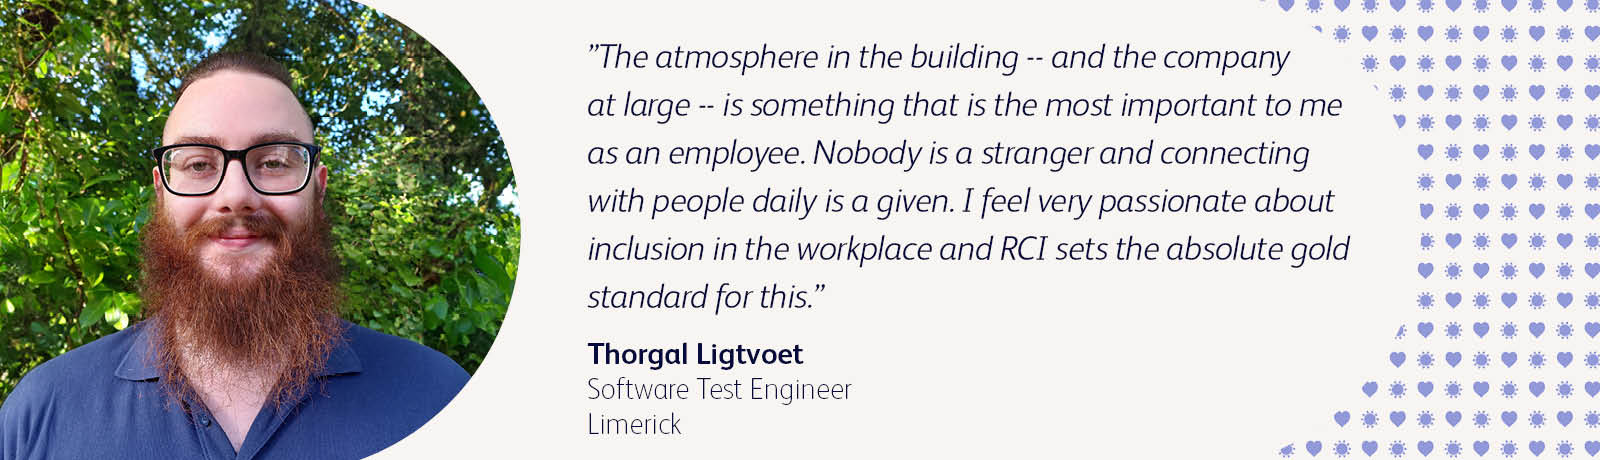 Thorgal Ligtvoet - Software Test Engineer at BD in Limerick